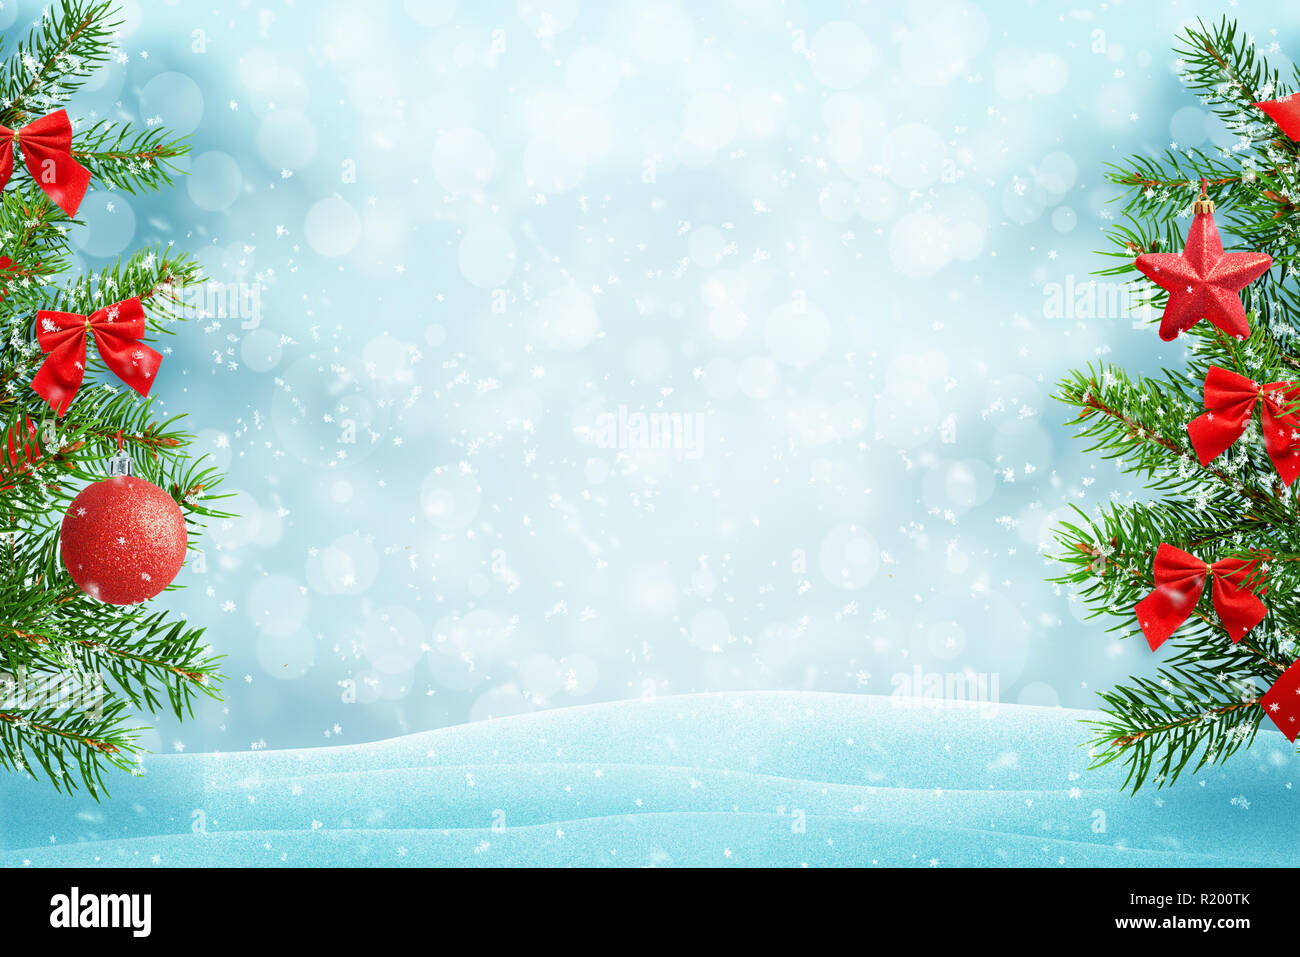 Rouge vert sapin de Noël avec décorations. Espace libre au milieu pour le texte. La neige qui tombe, la lumière et l'effet bokeh. Carte de vœux de Noël concept. Banque D'Images